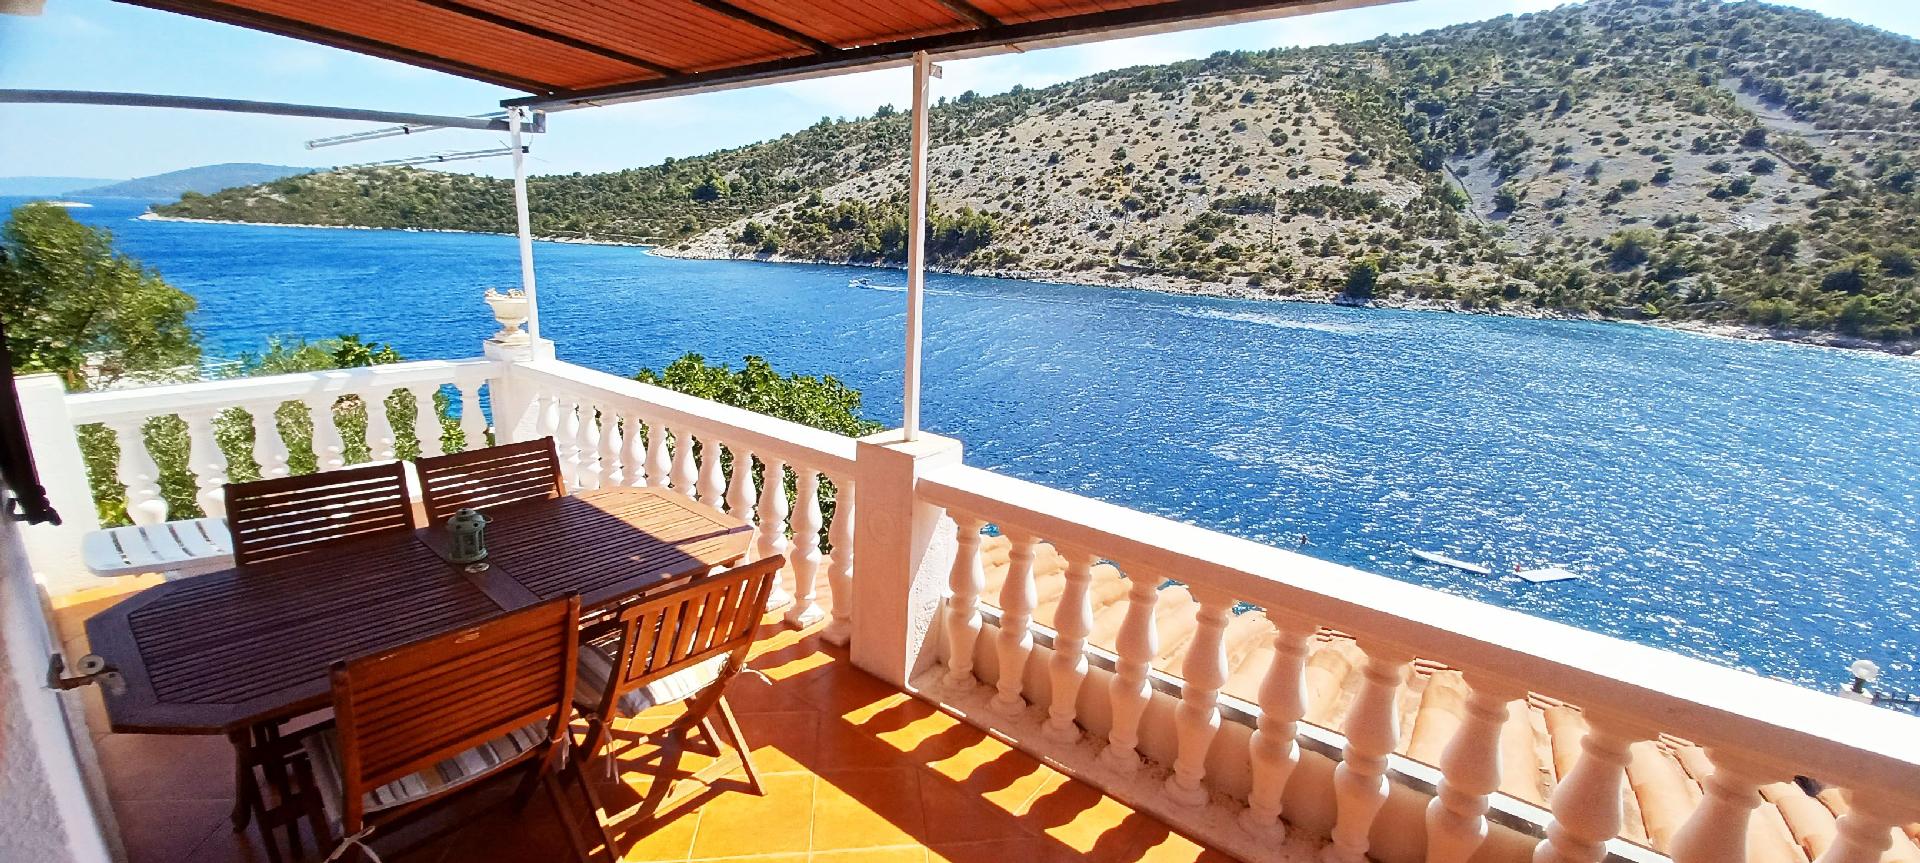 Ferienwohnung mit Balkon in der dritten Etage Ferienhaus in Dalmatien